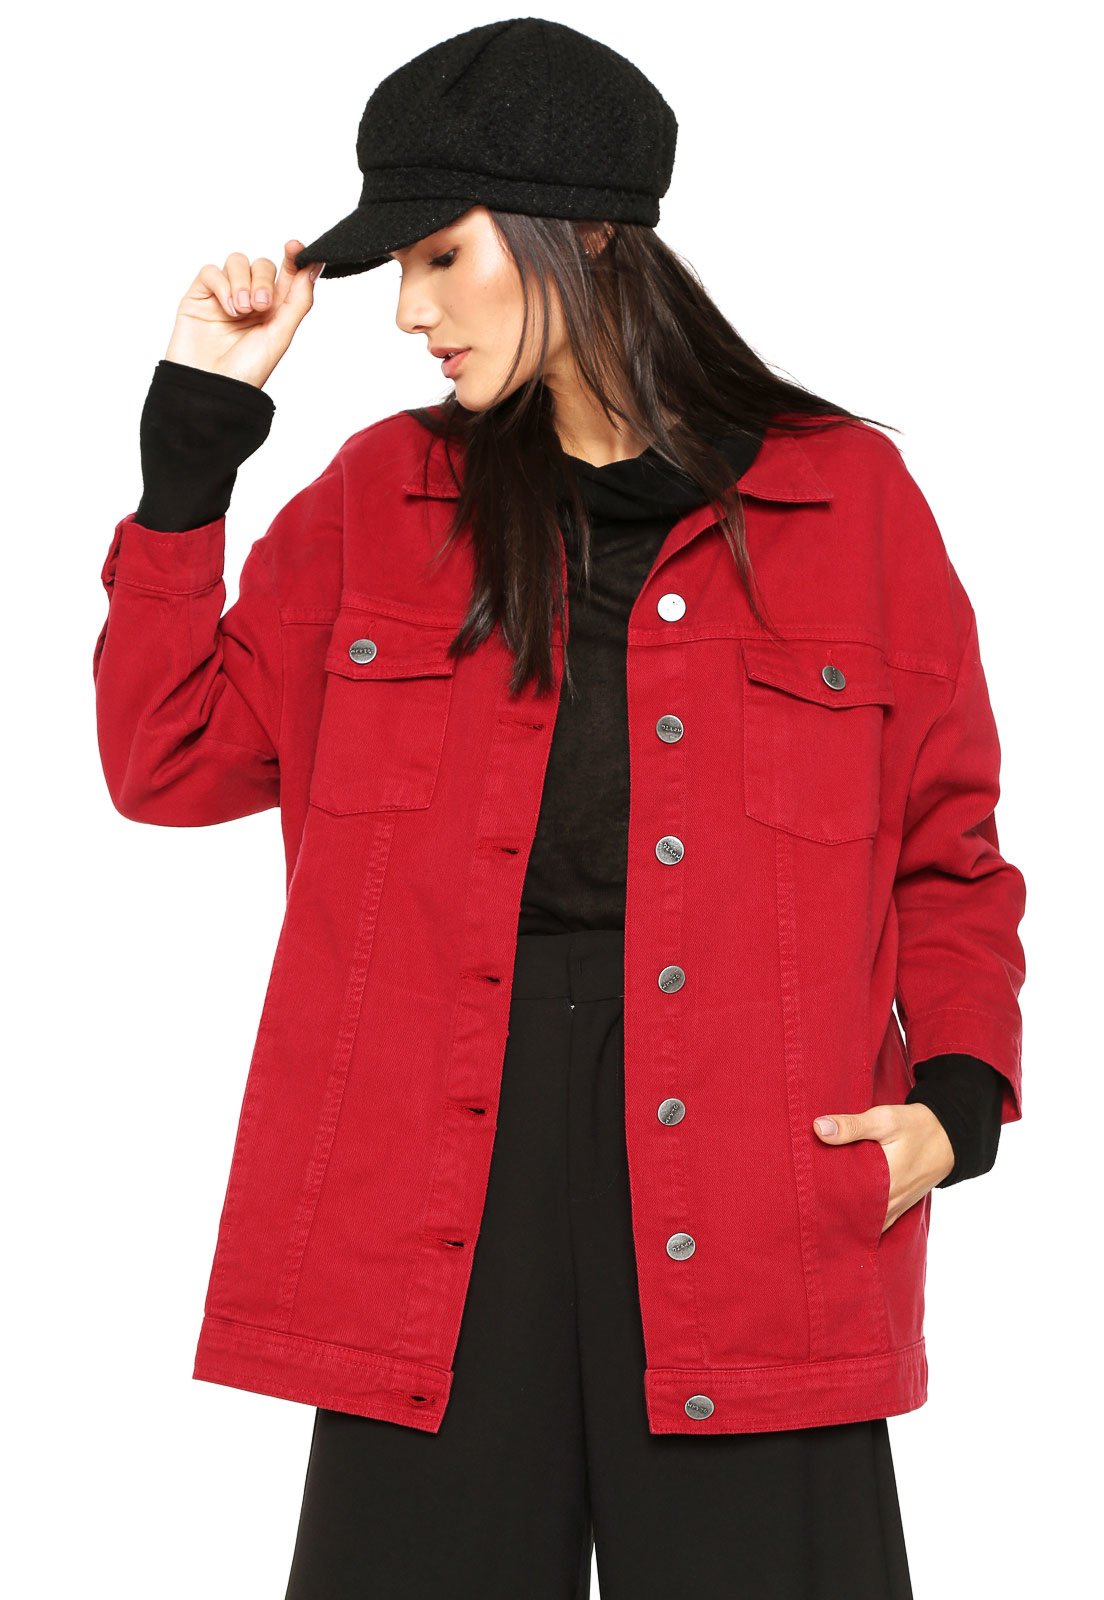 jaqueta vermelha sarja